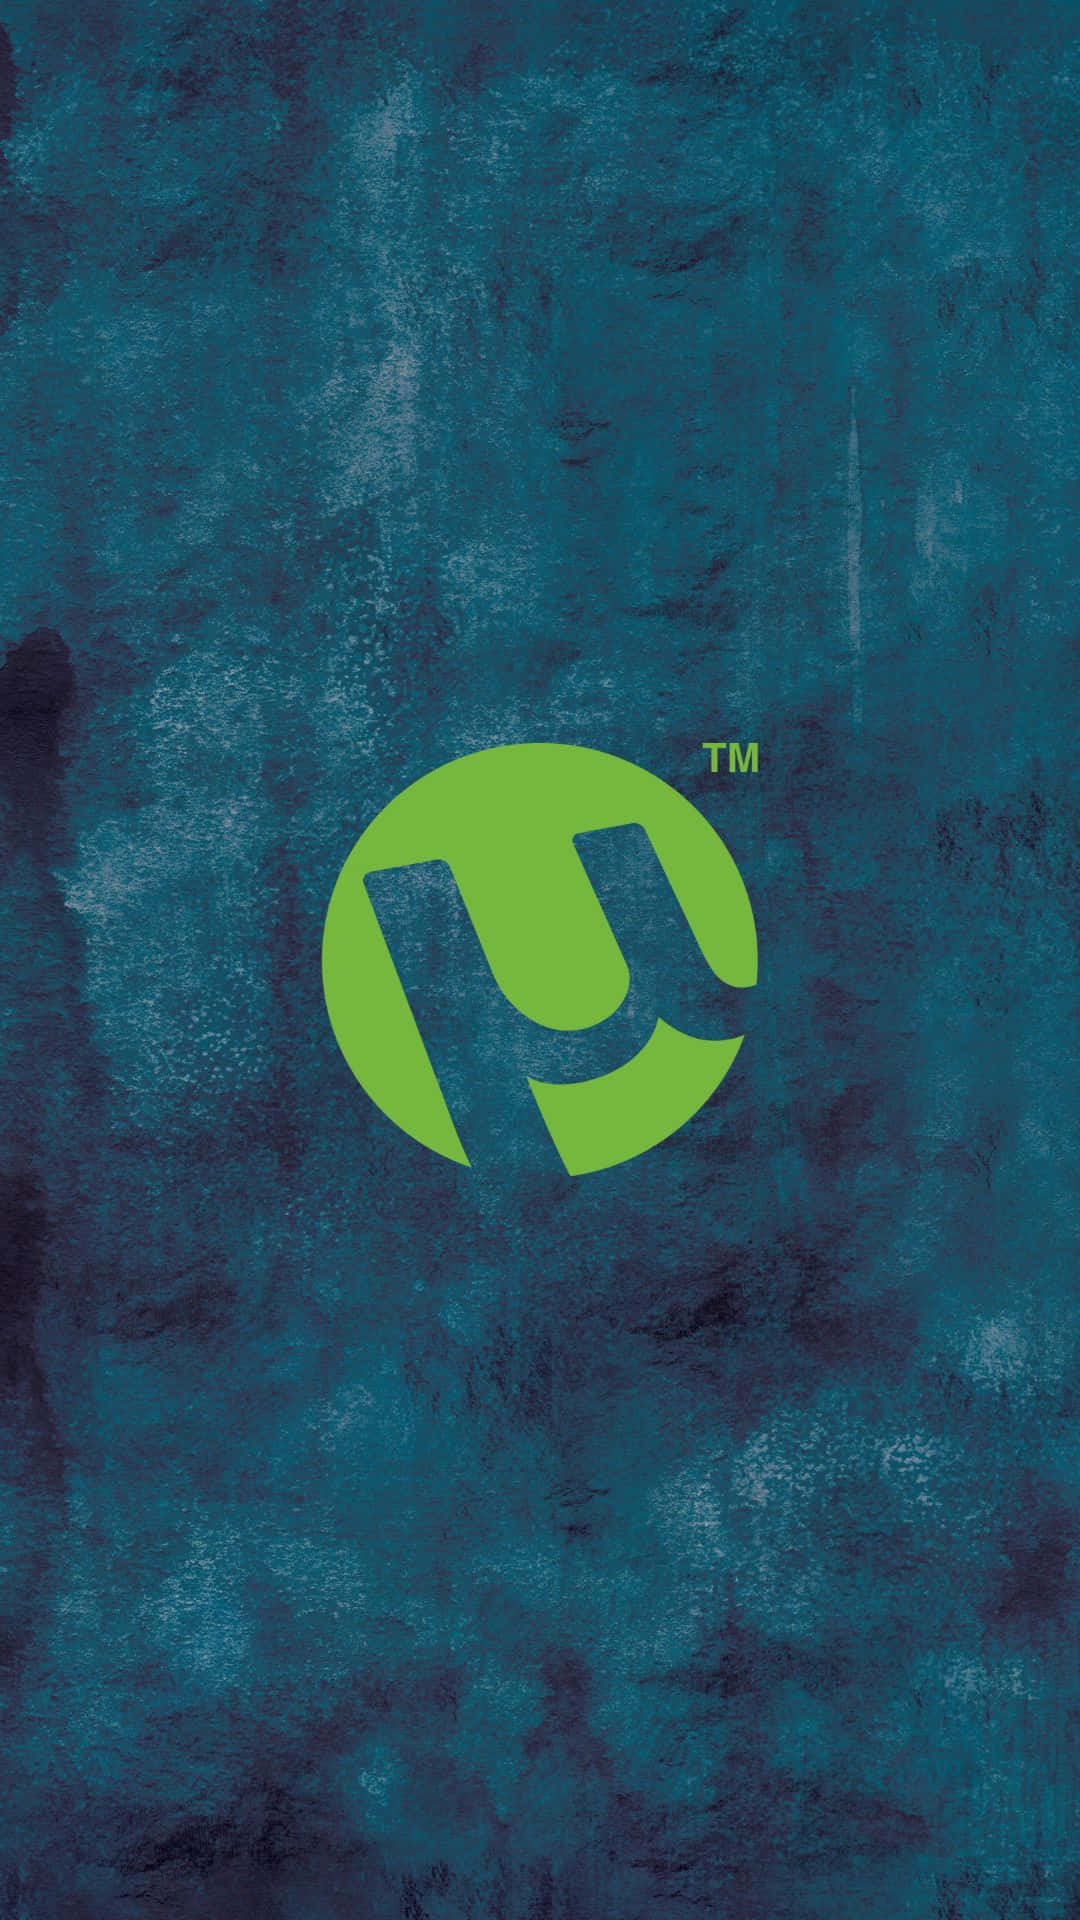 Eingrünes Logo Auf Einem Blauen Hintergrund Wallpaper